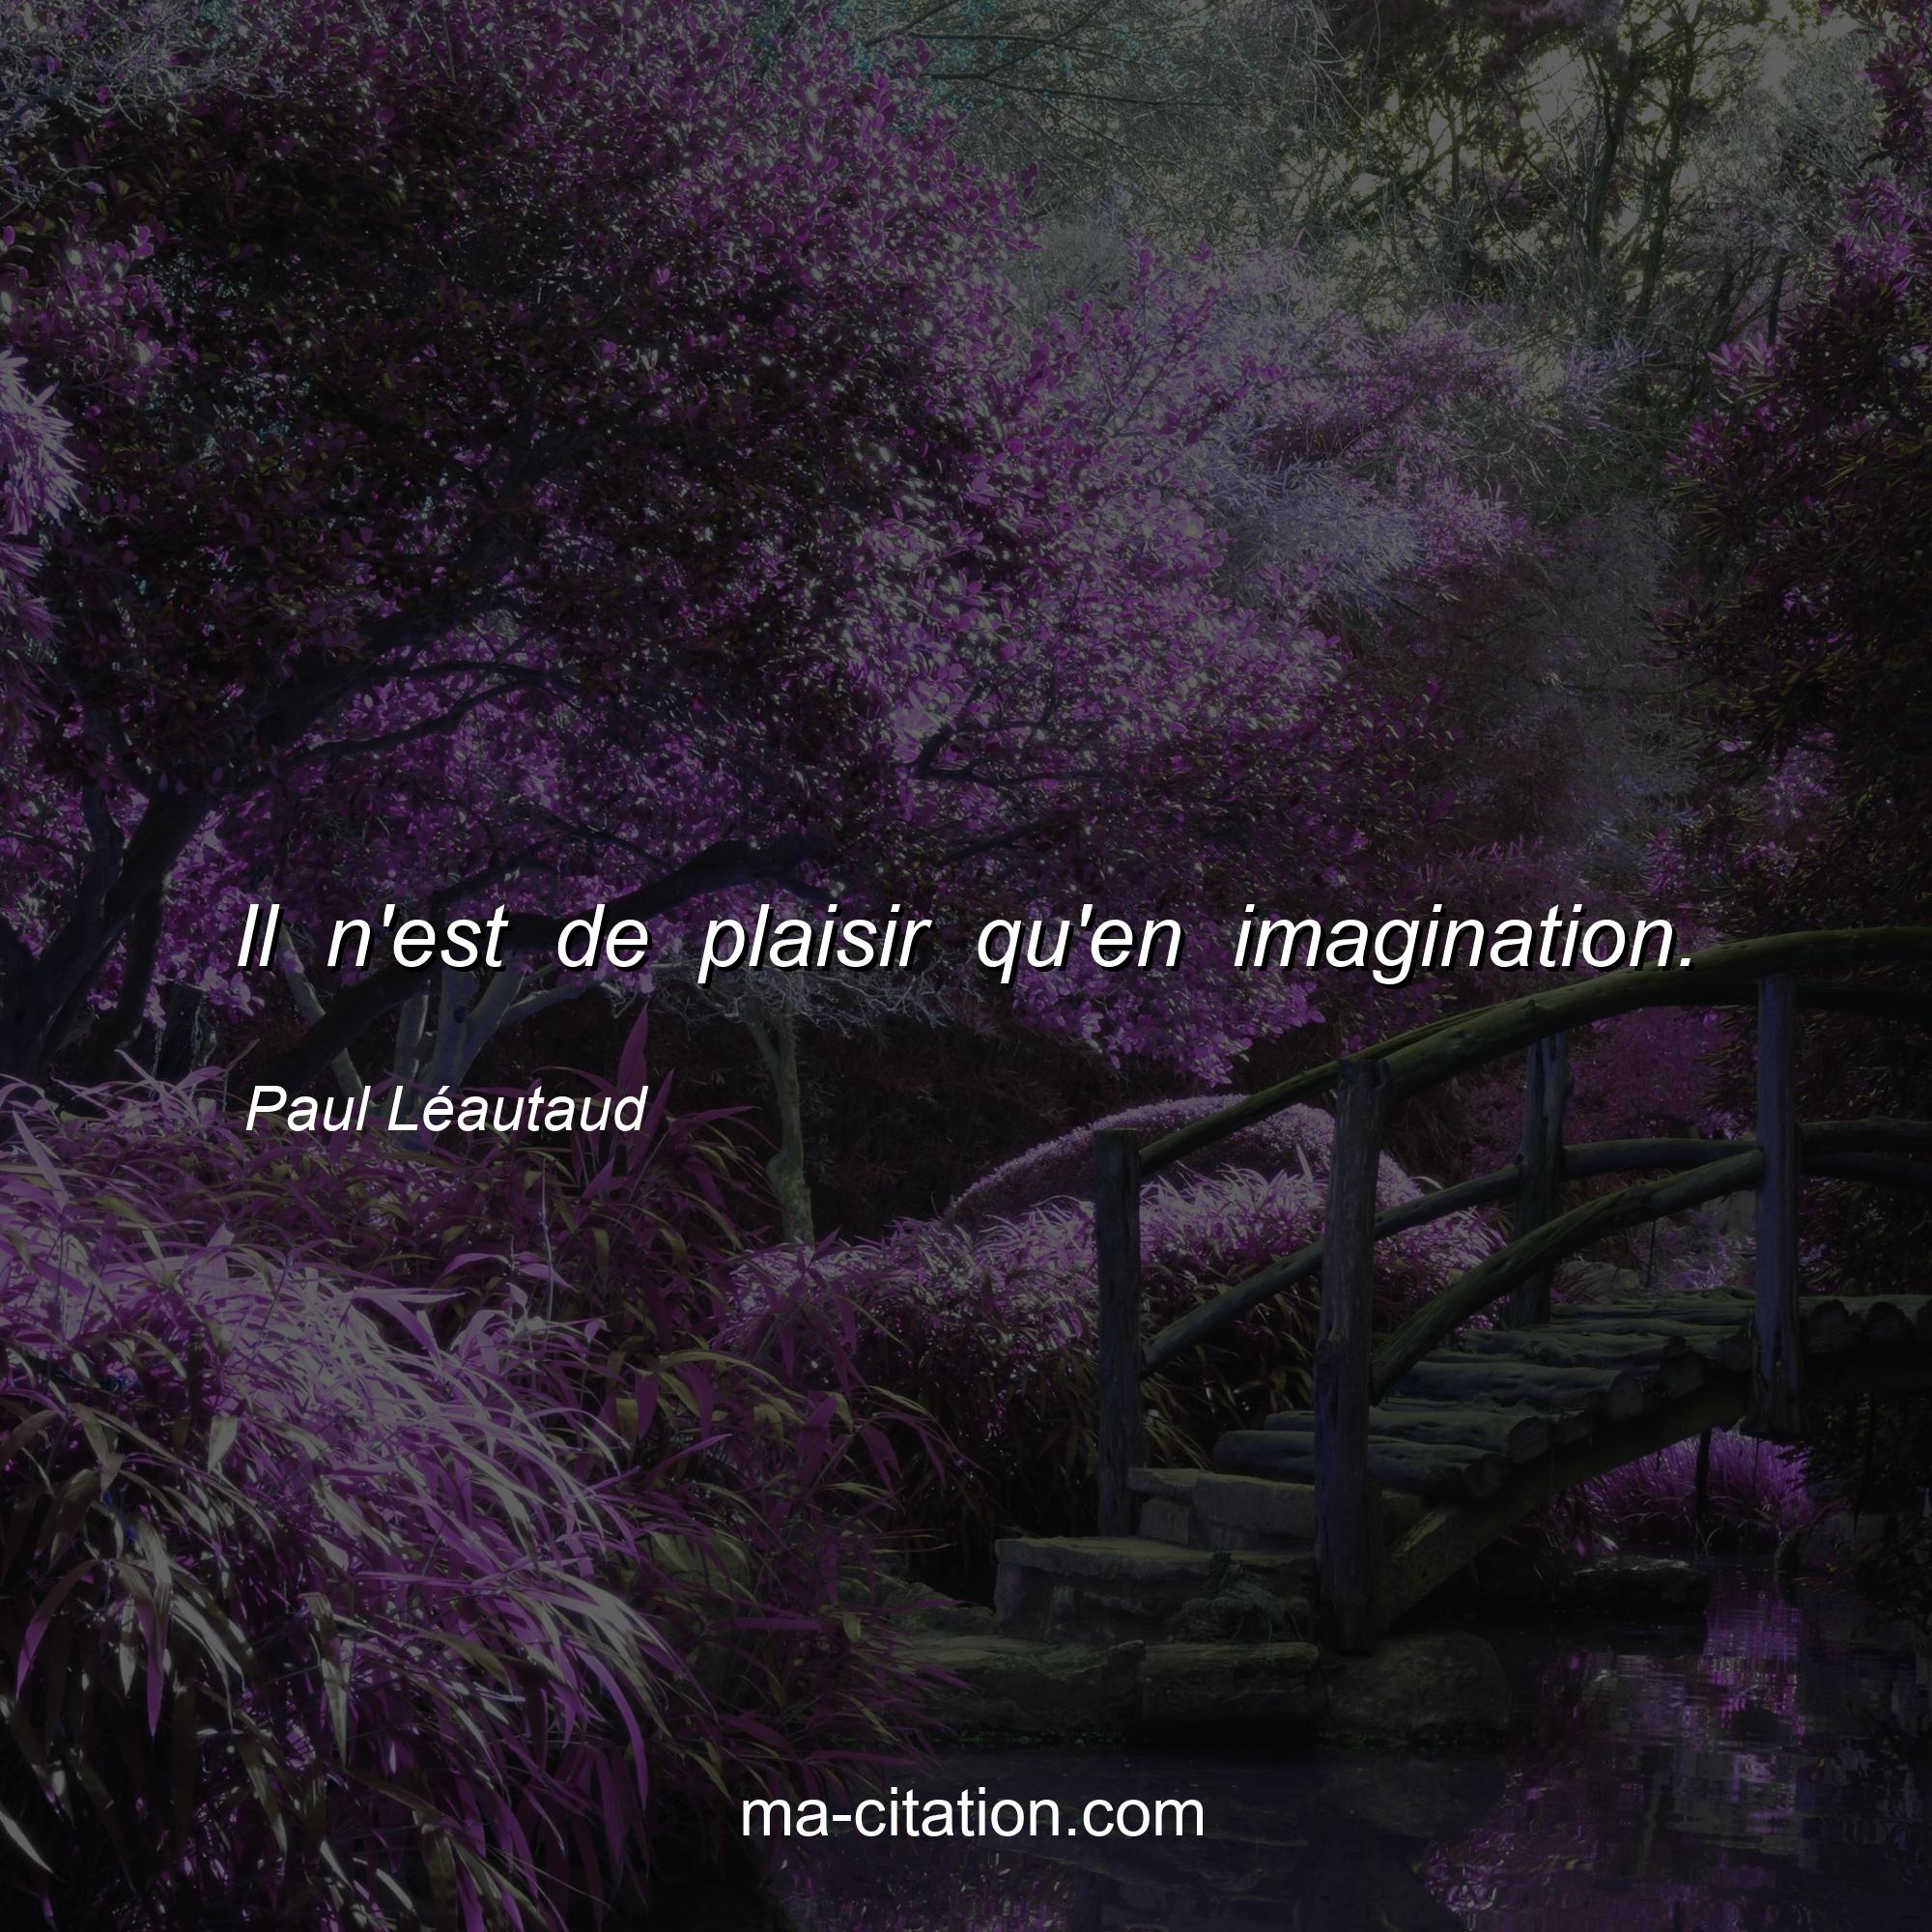 Paul Léautaud : Il n'est de plaisir qu'en imagination.